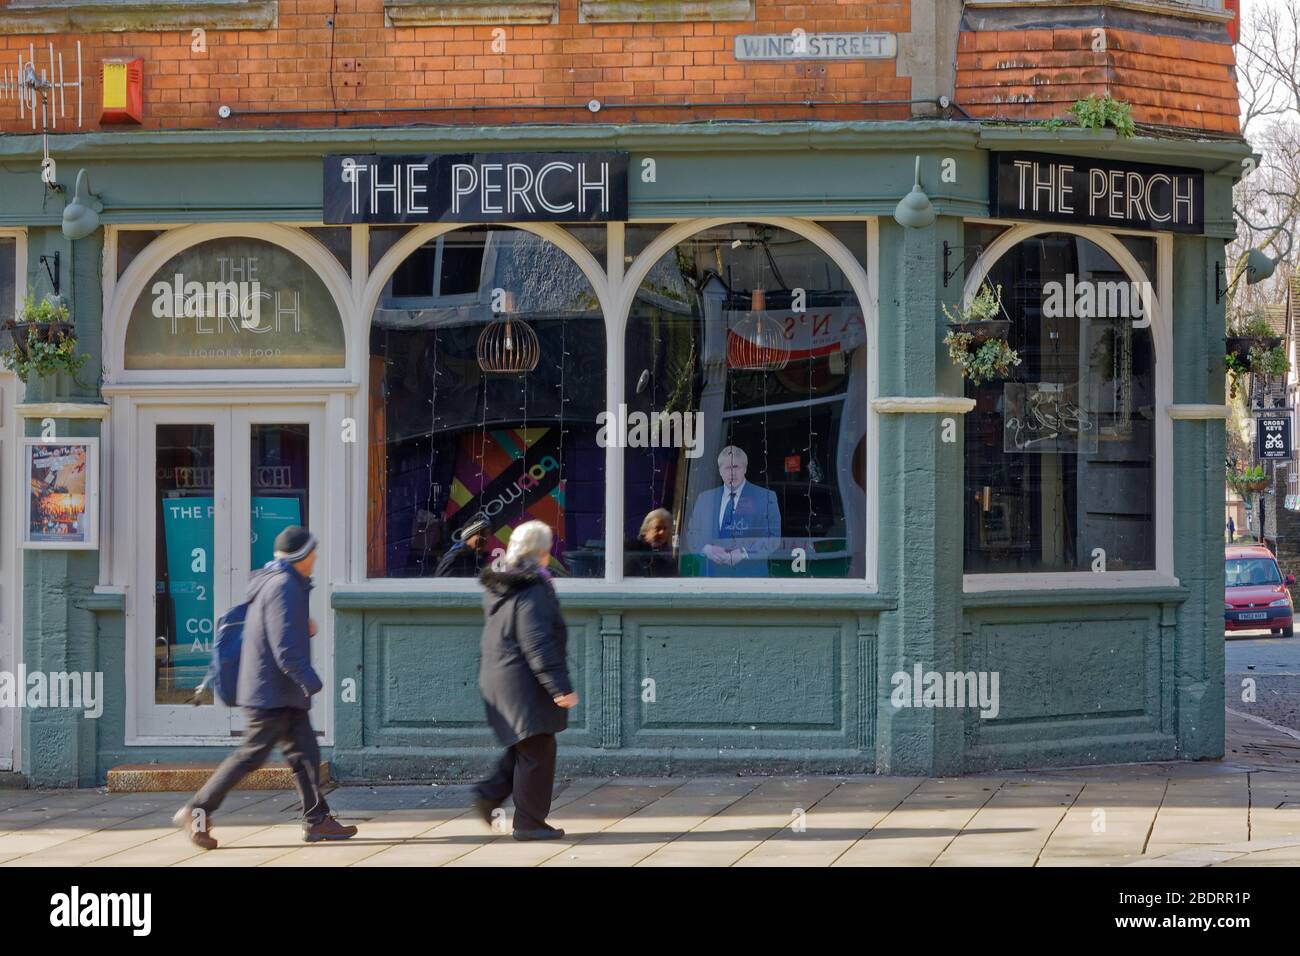 Nella foto: Un taglio Boris Johnson all'interno del bar Perch a Wind Street, Swansea, Galles, Regno Unito. Martedì 24 Marzo 2020 Re: Covid-19 Coronavirus pandemic, UK Foto Stock